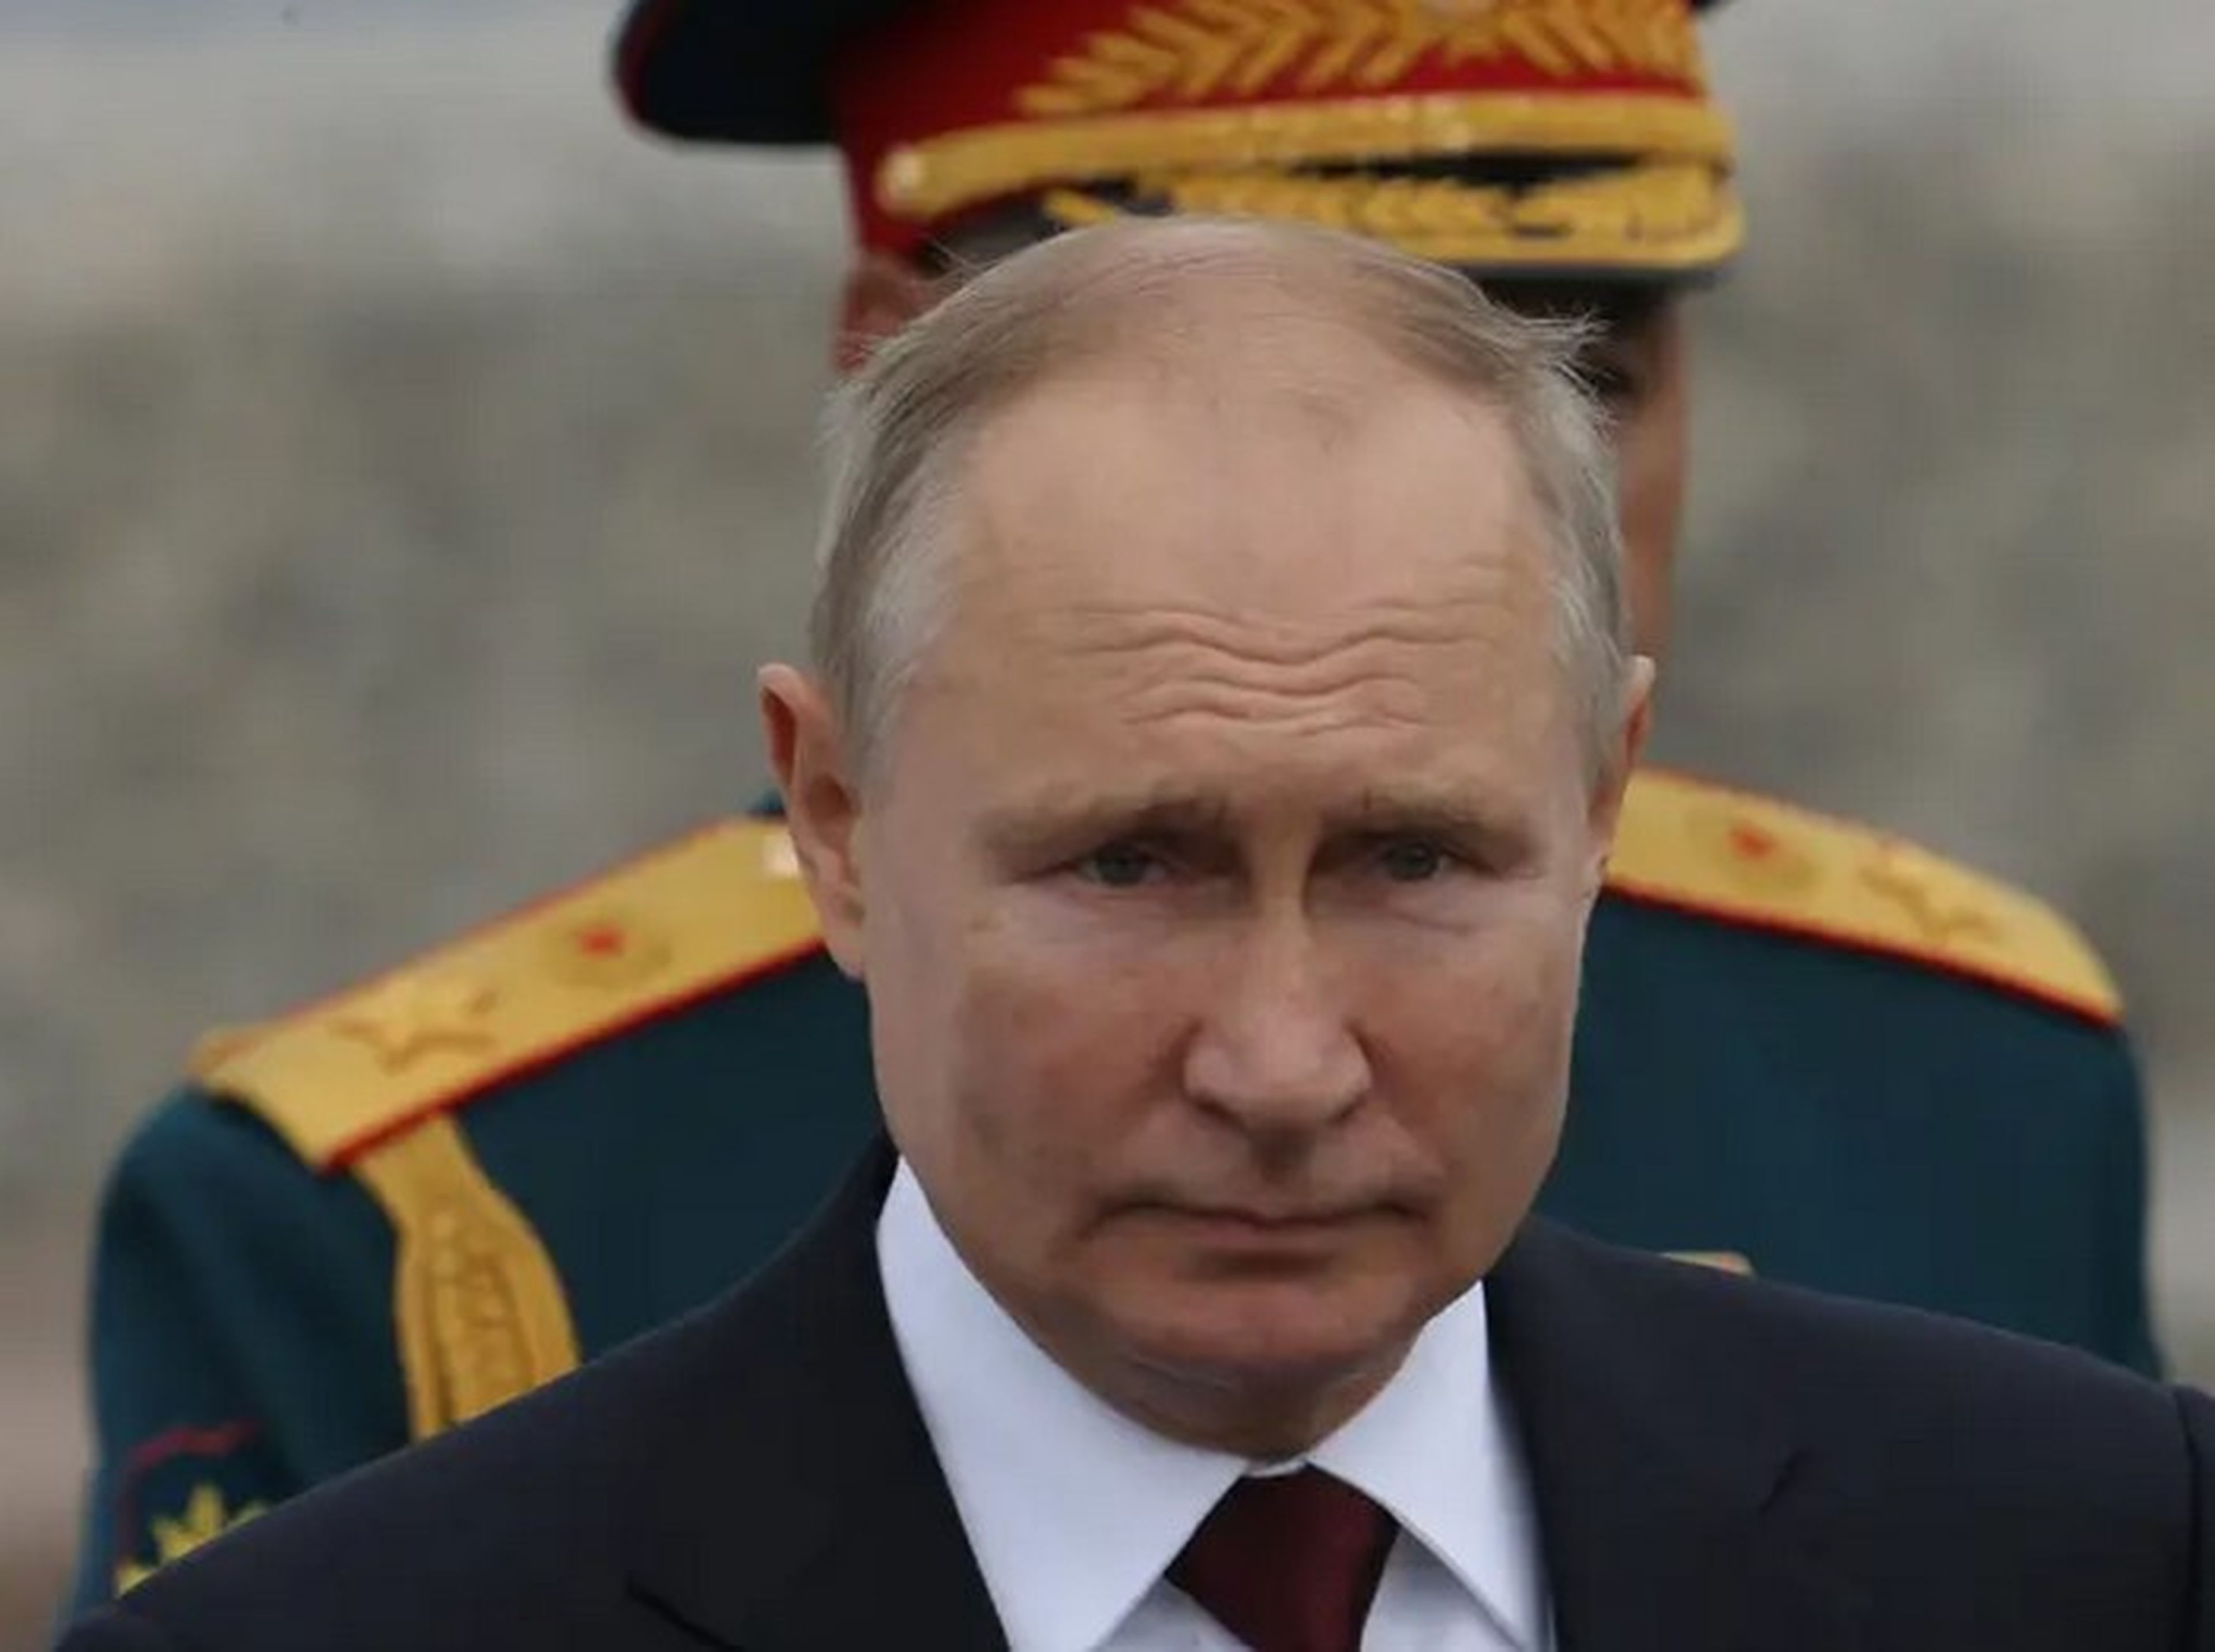 El presidente ruso Vladimir Putin asistió a un desfile militar el 25 de julio de 2021 en San Petersburgo, Rusia.